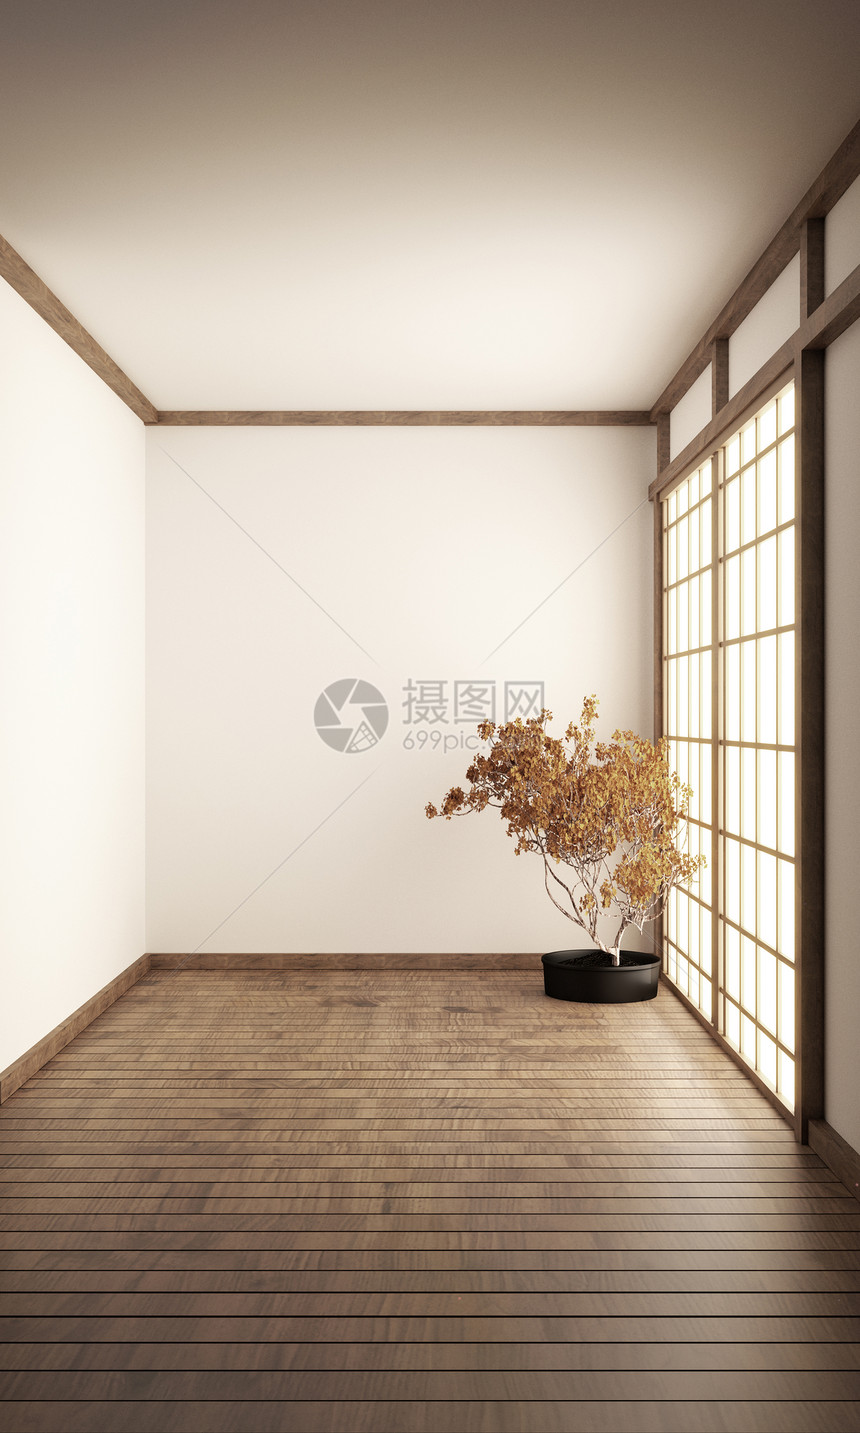 Japn房间风格模拟室内设计3D翻譯图片